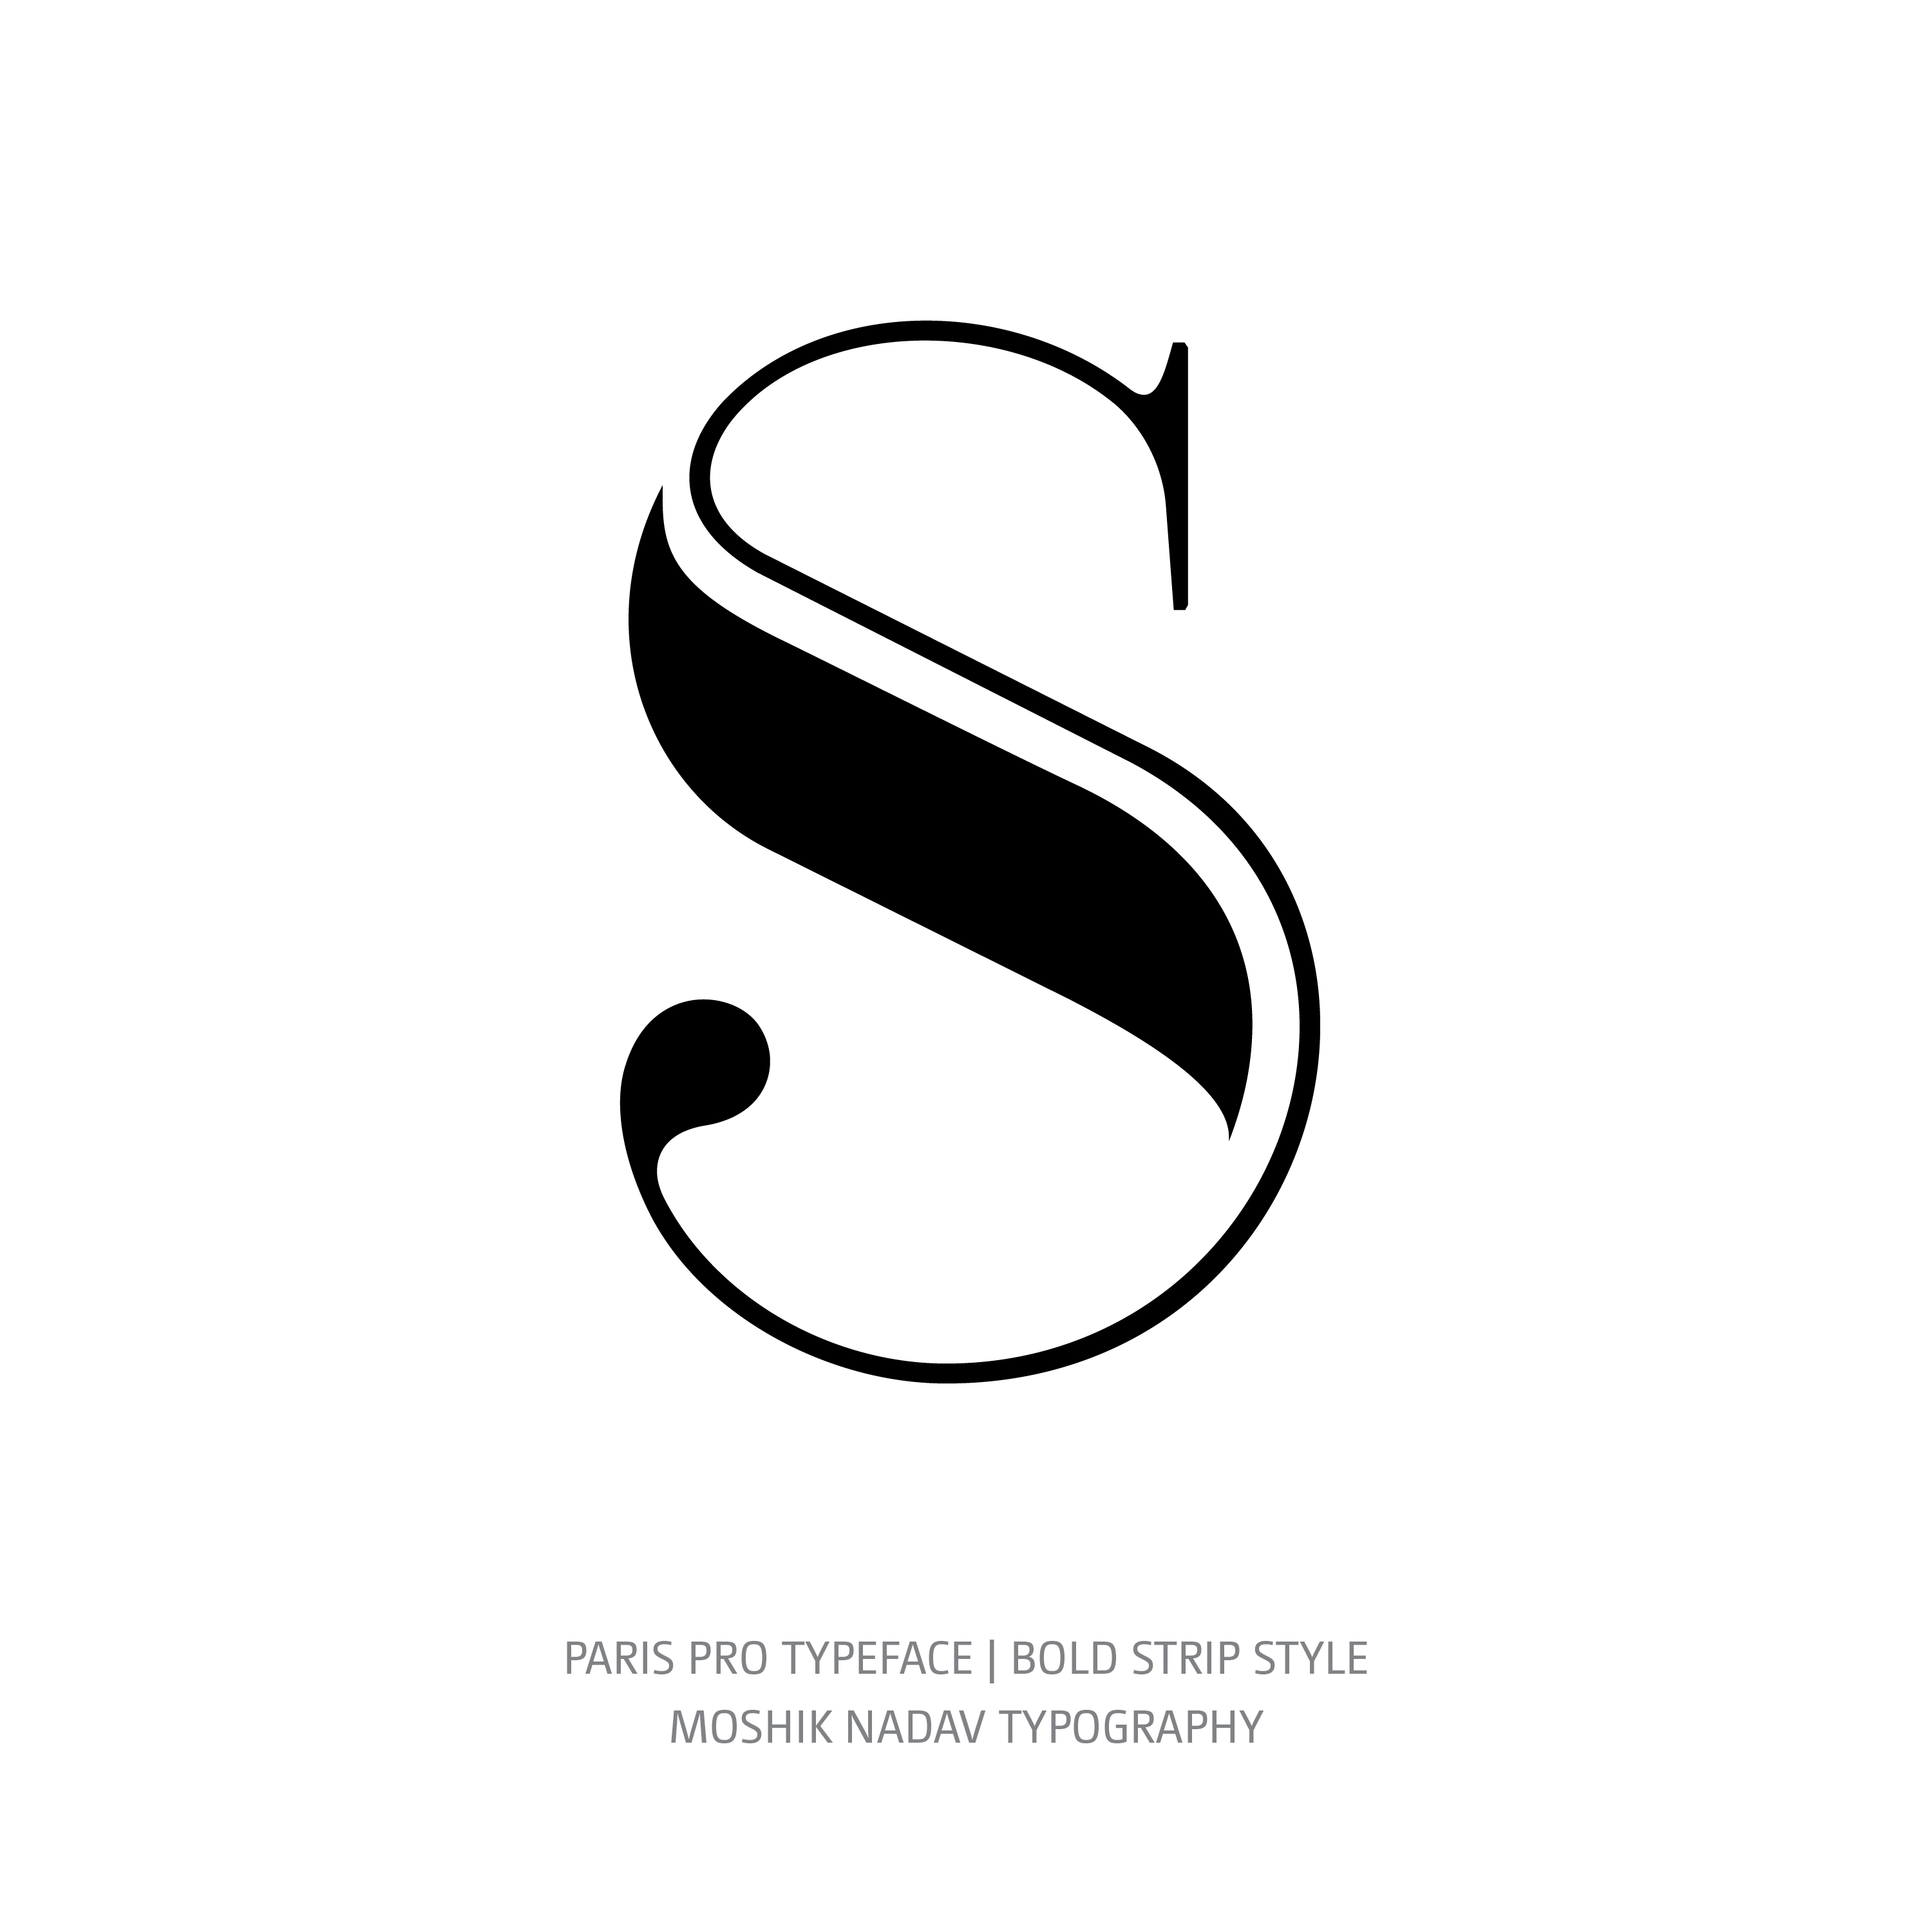 Paris Pro Typeface Bold Strip S